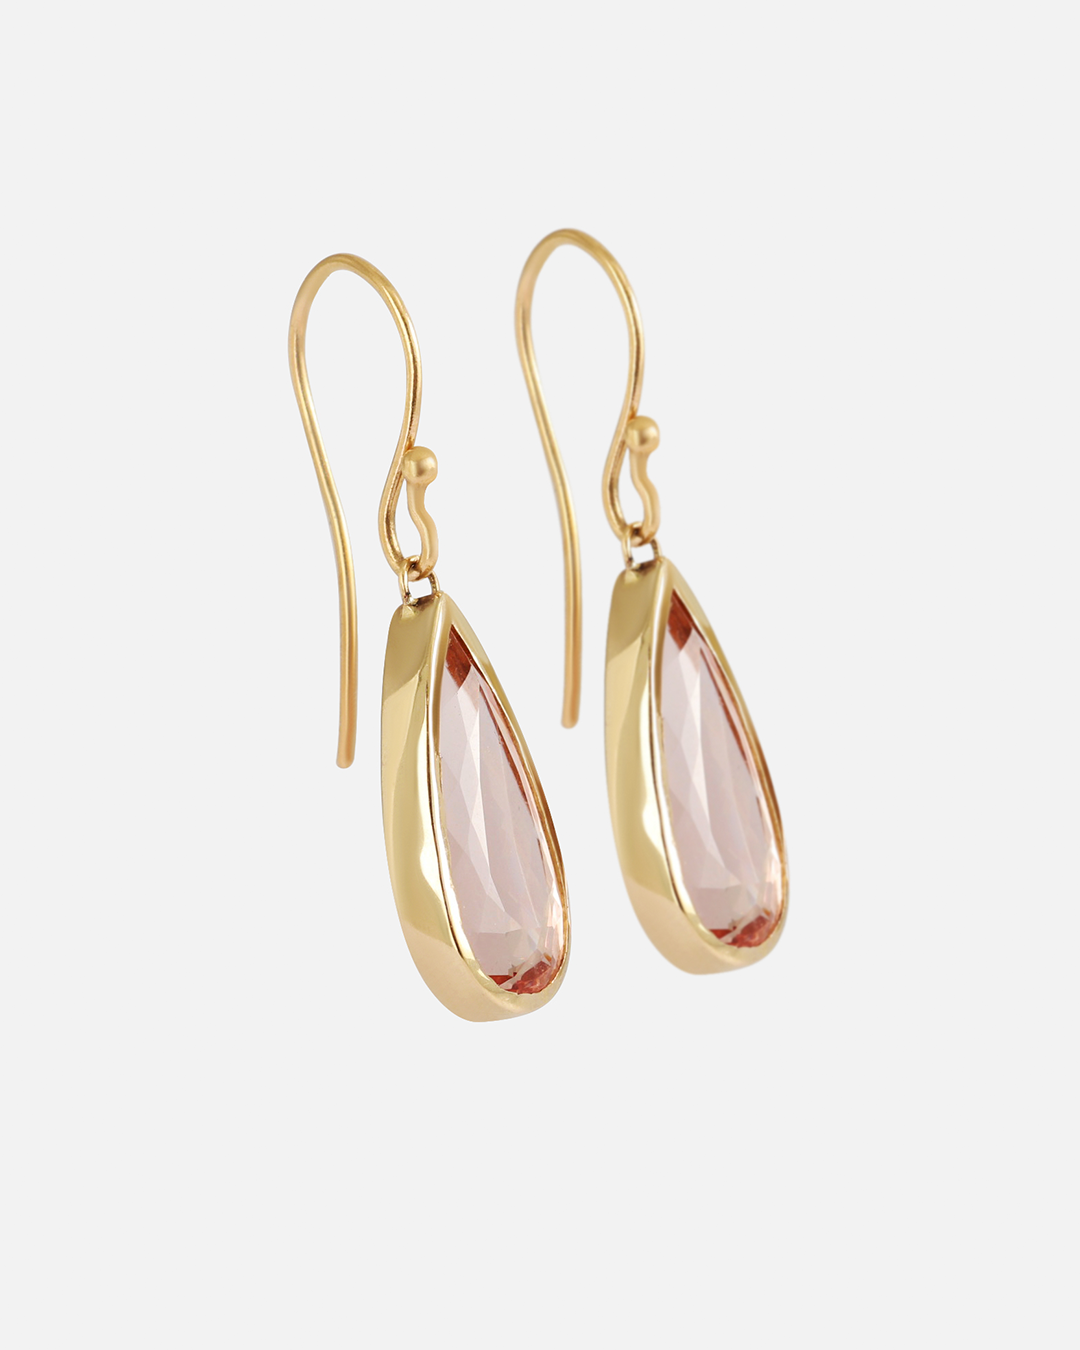 Pear / Morganite Drop Earrings By fitzgerald jewelry